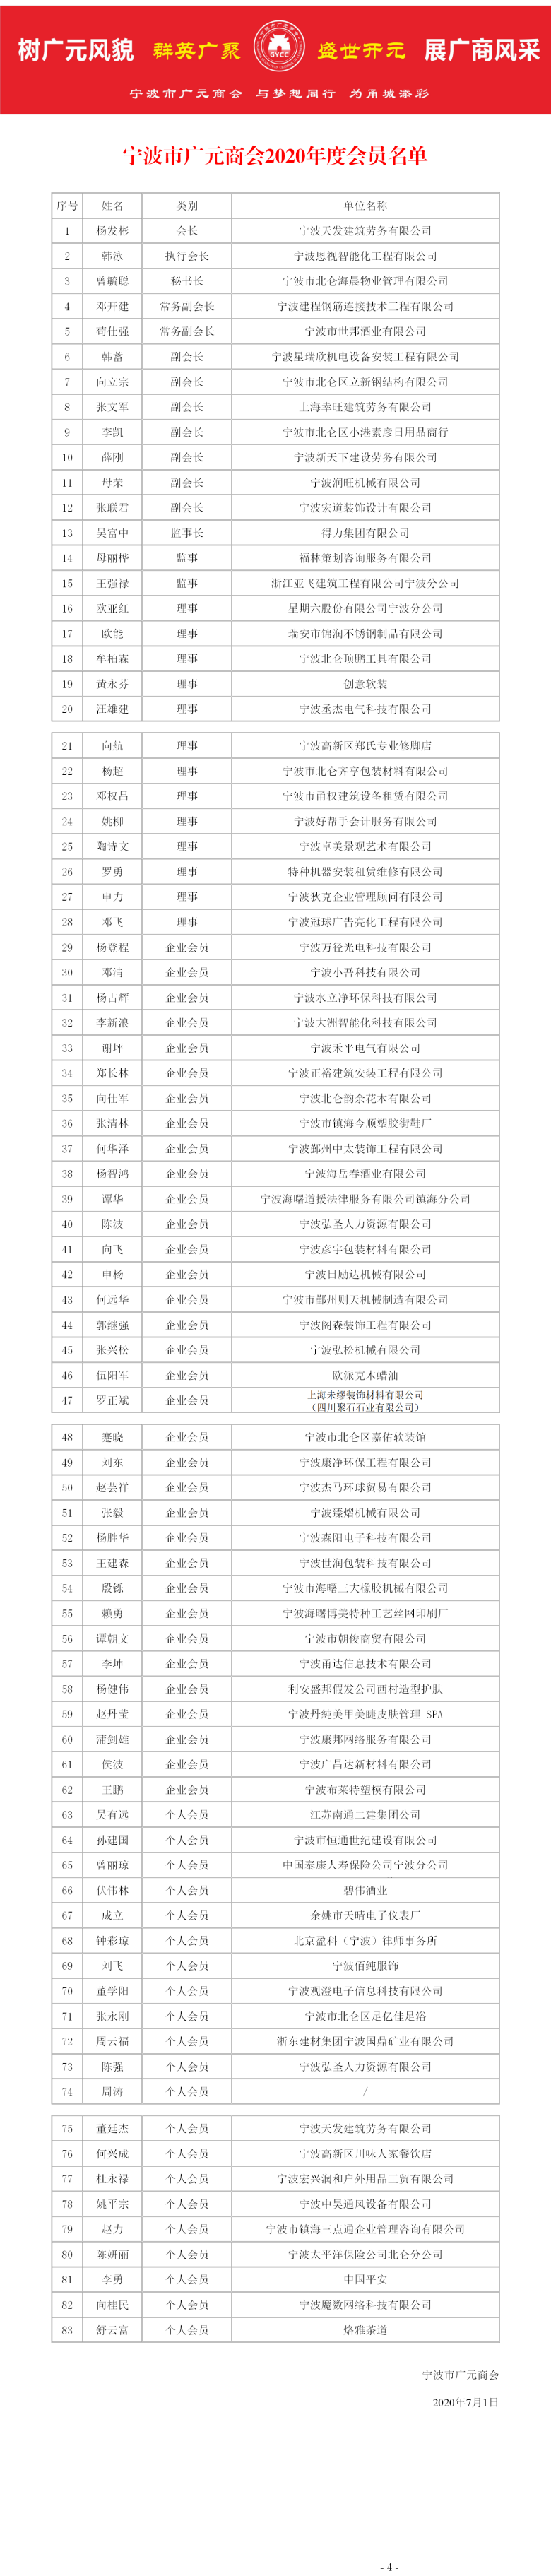 宁波市广元商会2020年度会员名单 公示.png